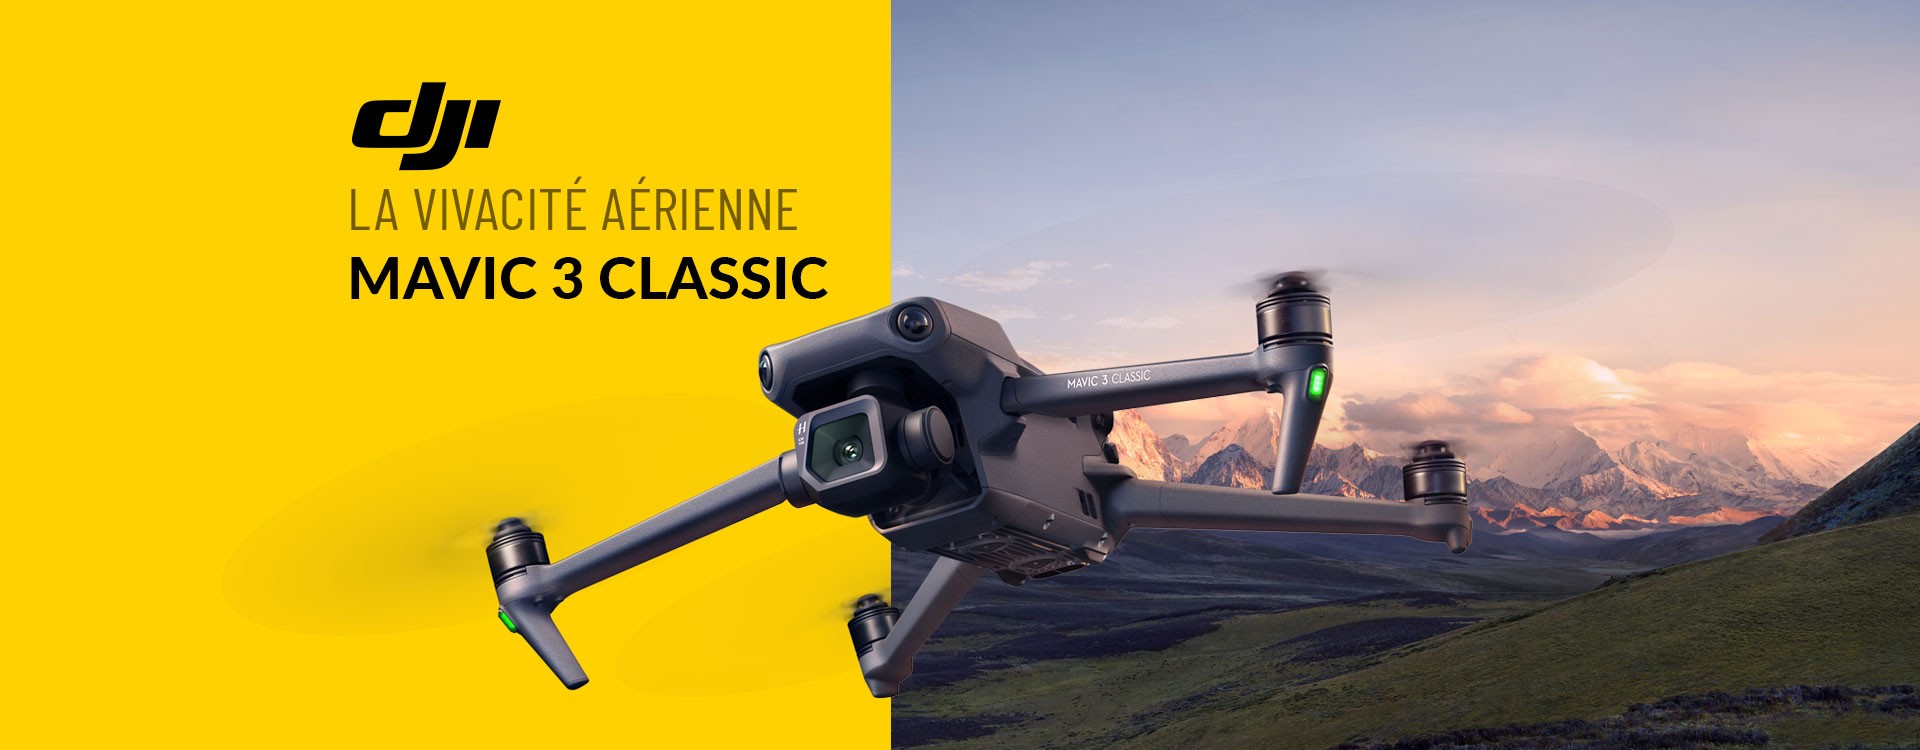 DJI rend le meilleur drone au monde plus accessible avec Mavic 3 Classic